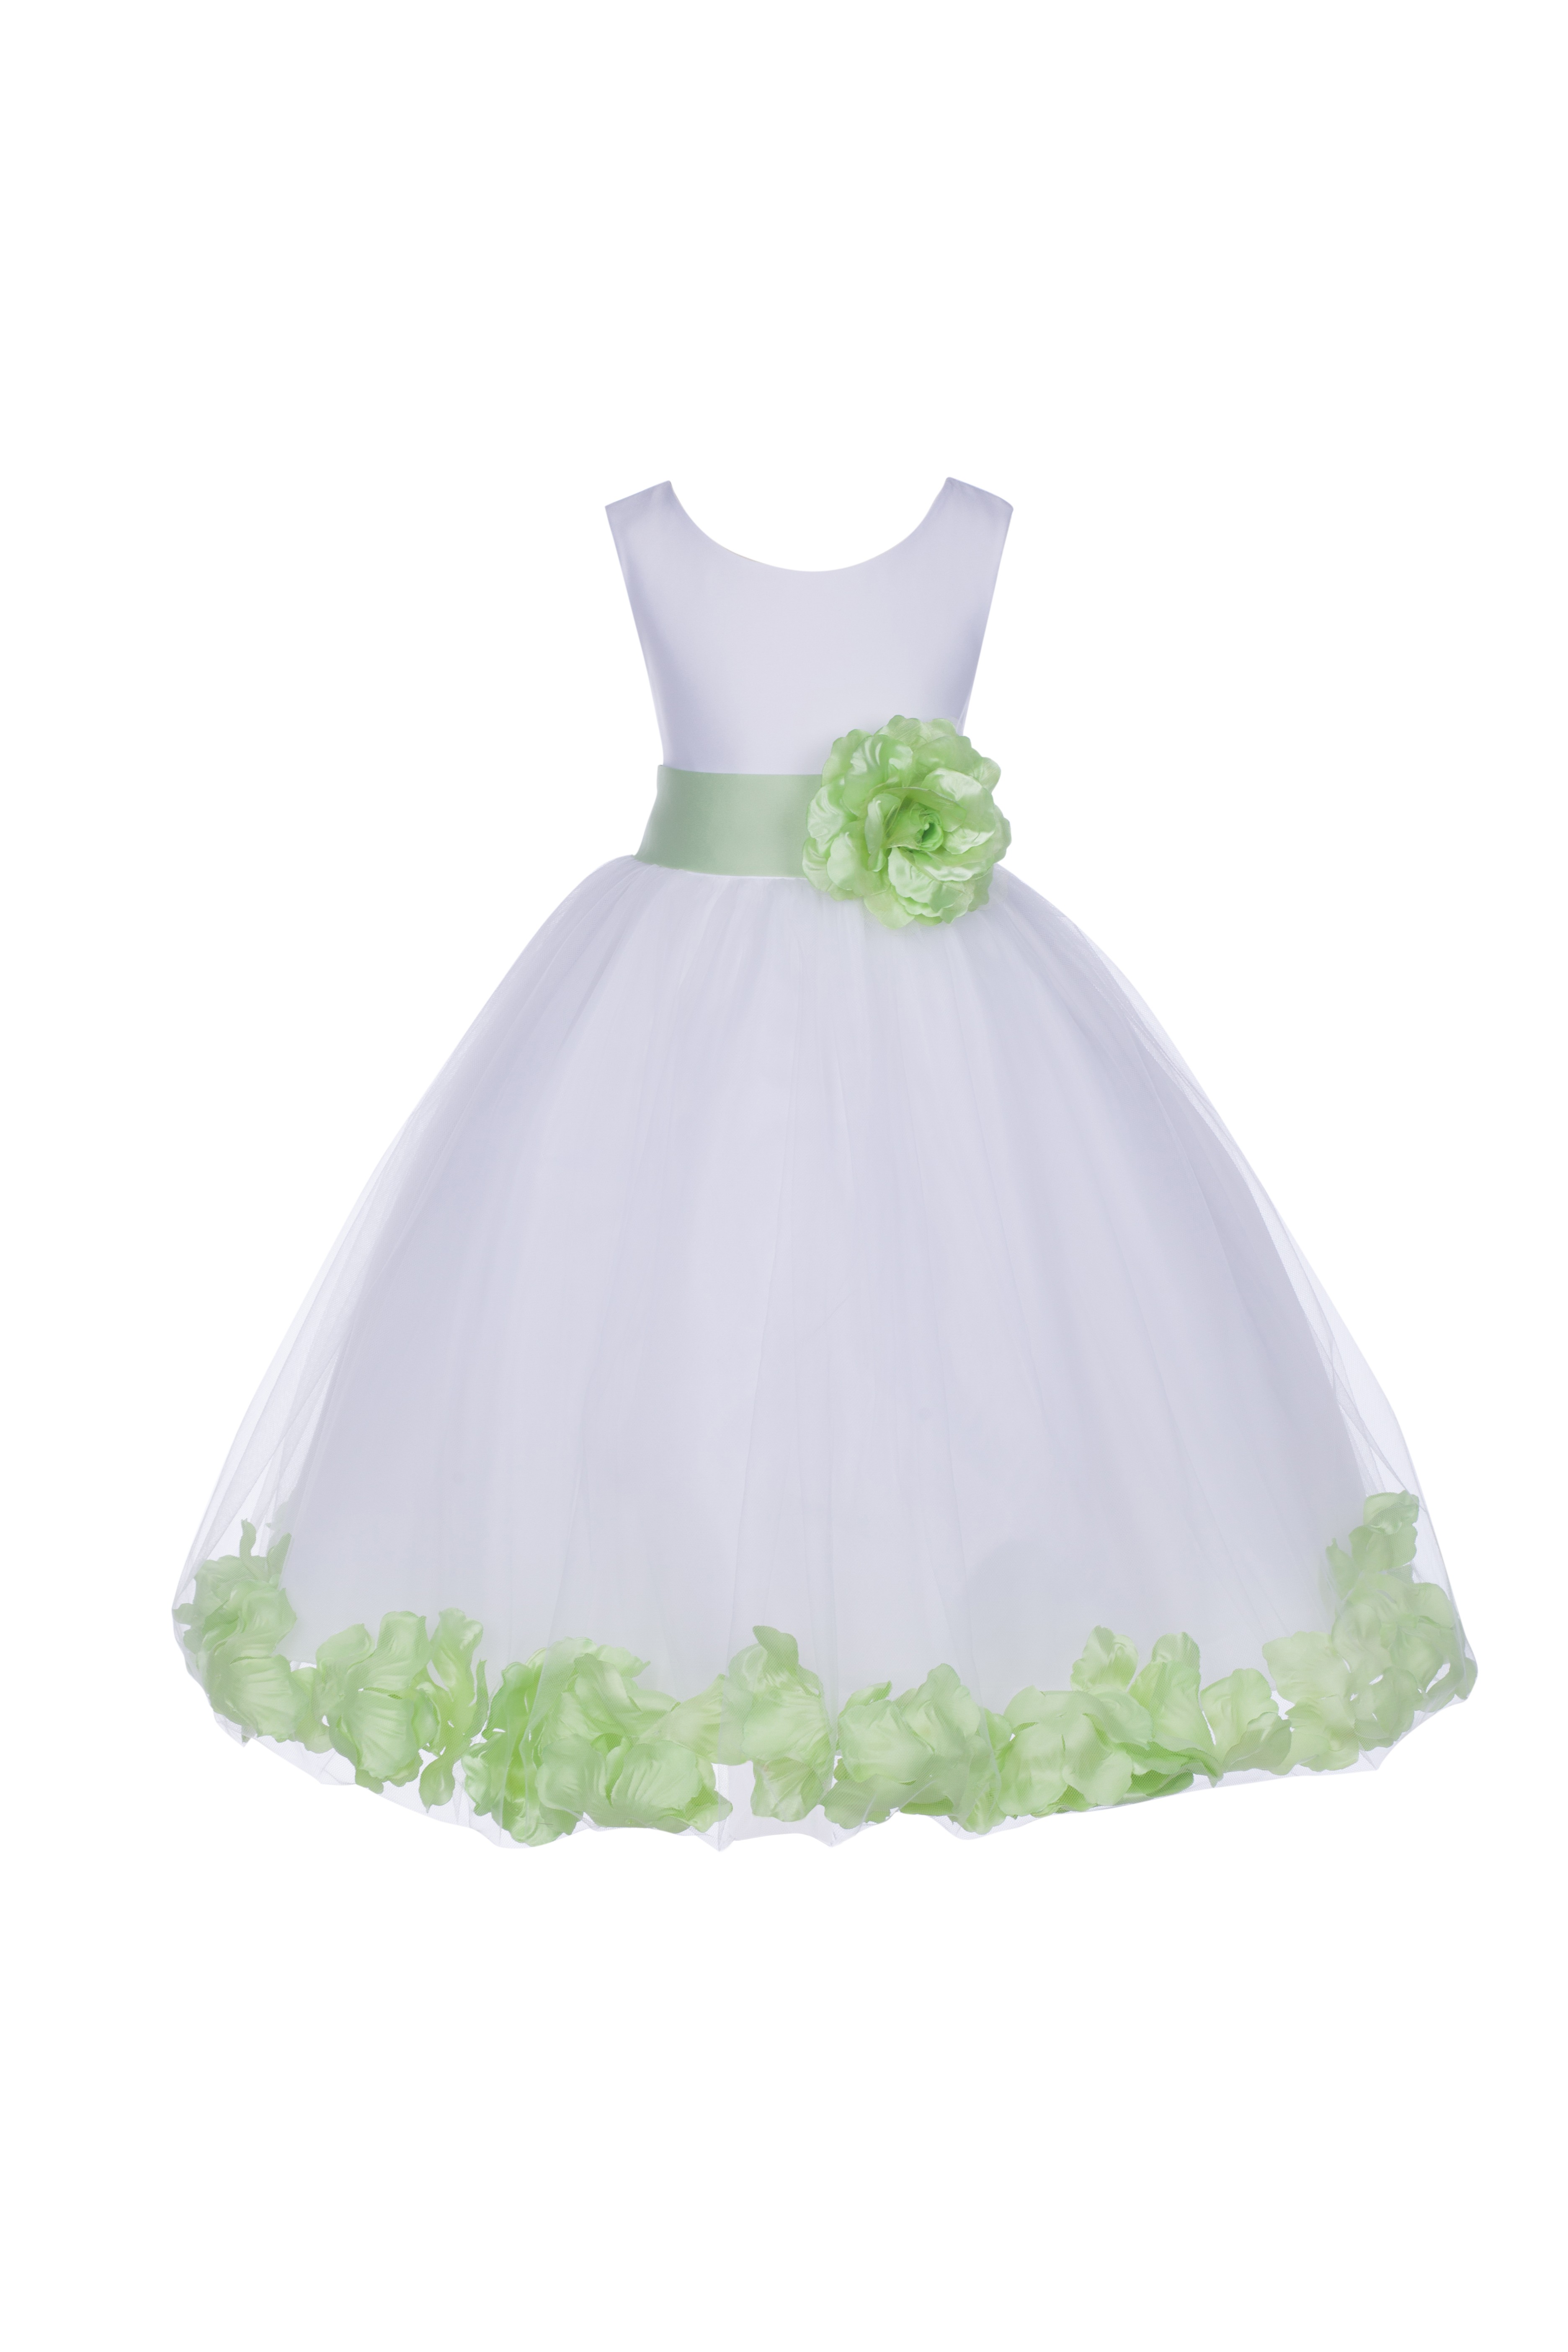 White/Apple Green Tulle Rose Petals Flower Girl Dress Wedding 302T